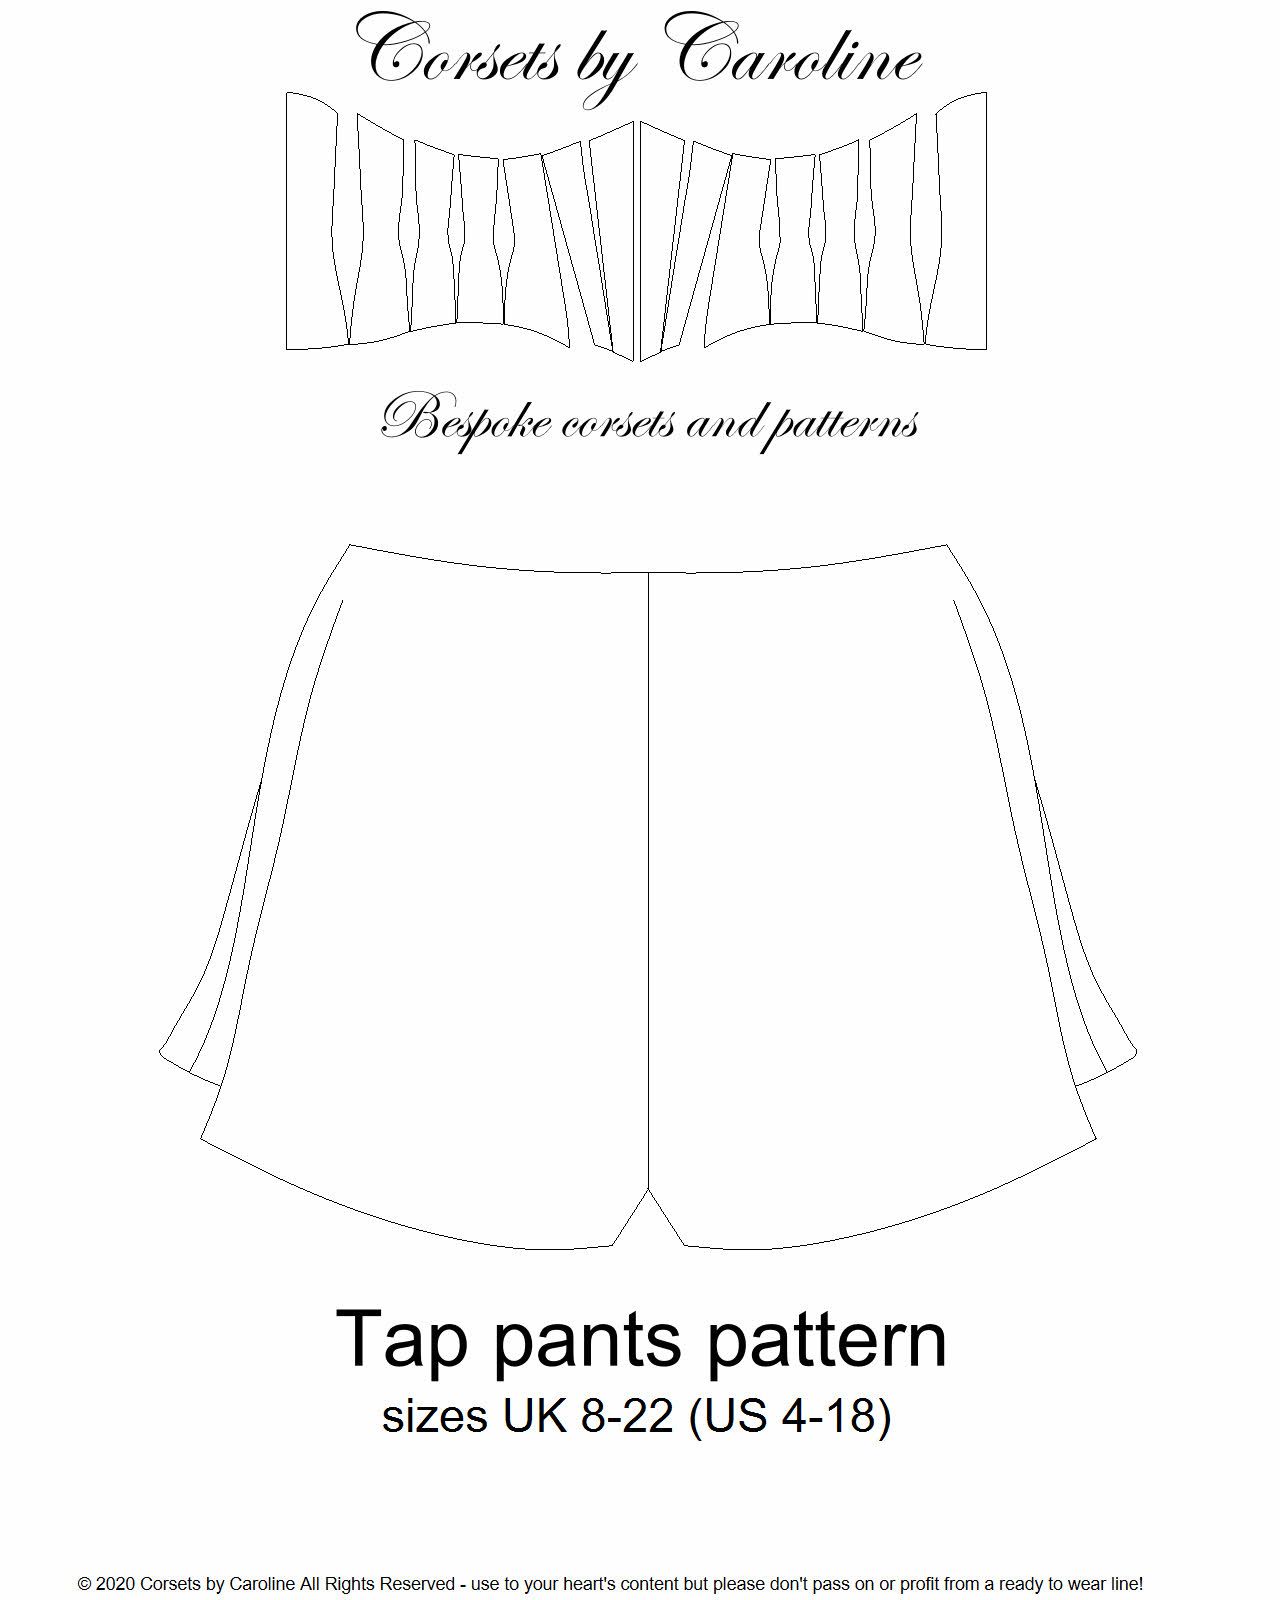 Tap pants digital pattern